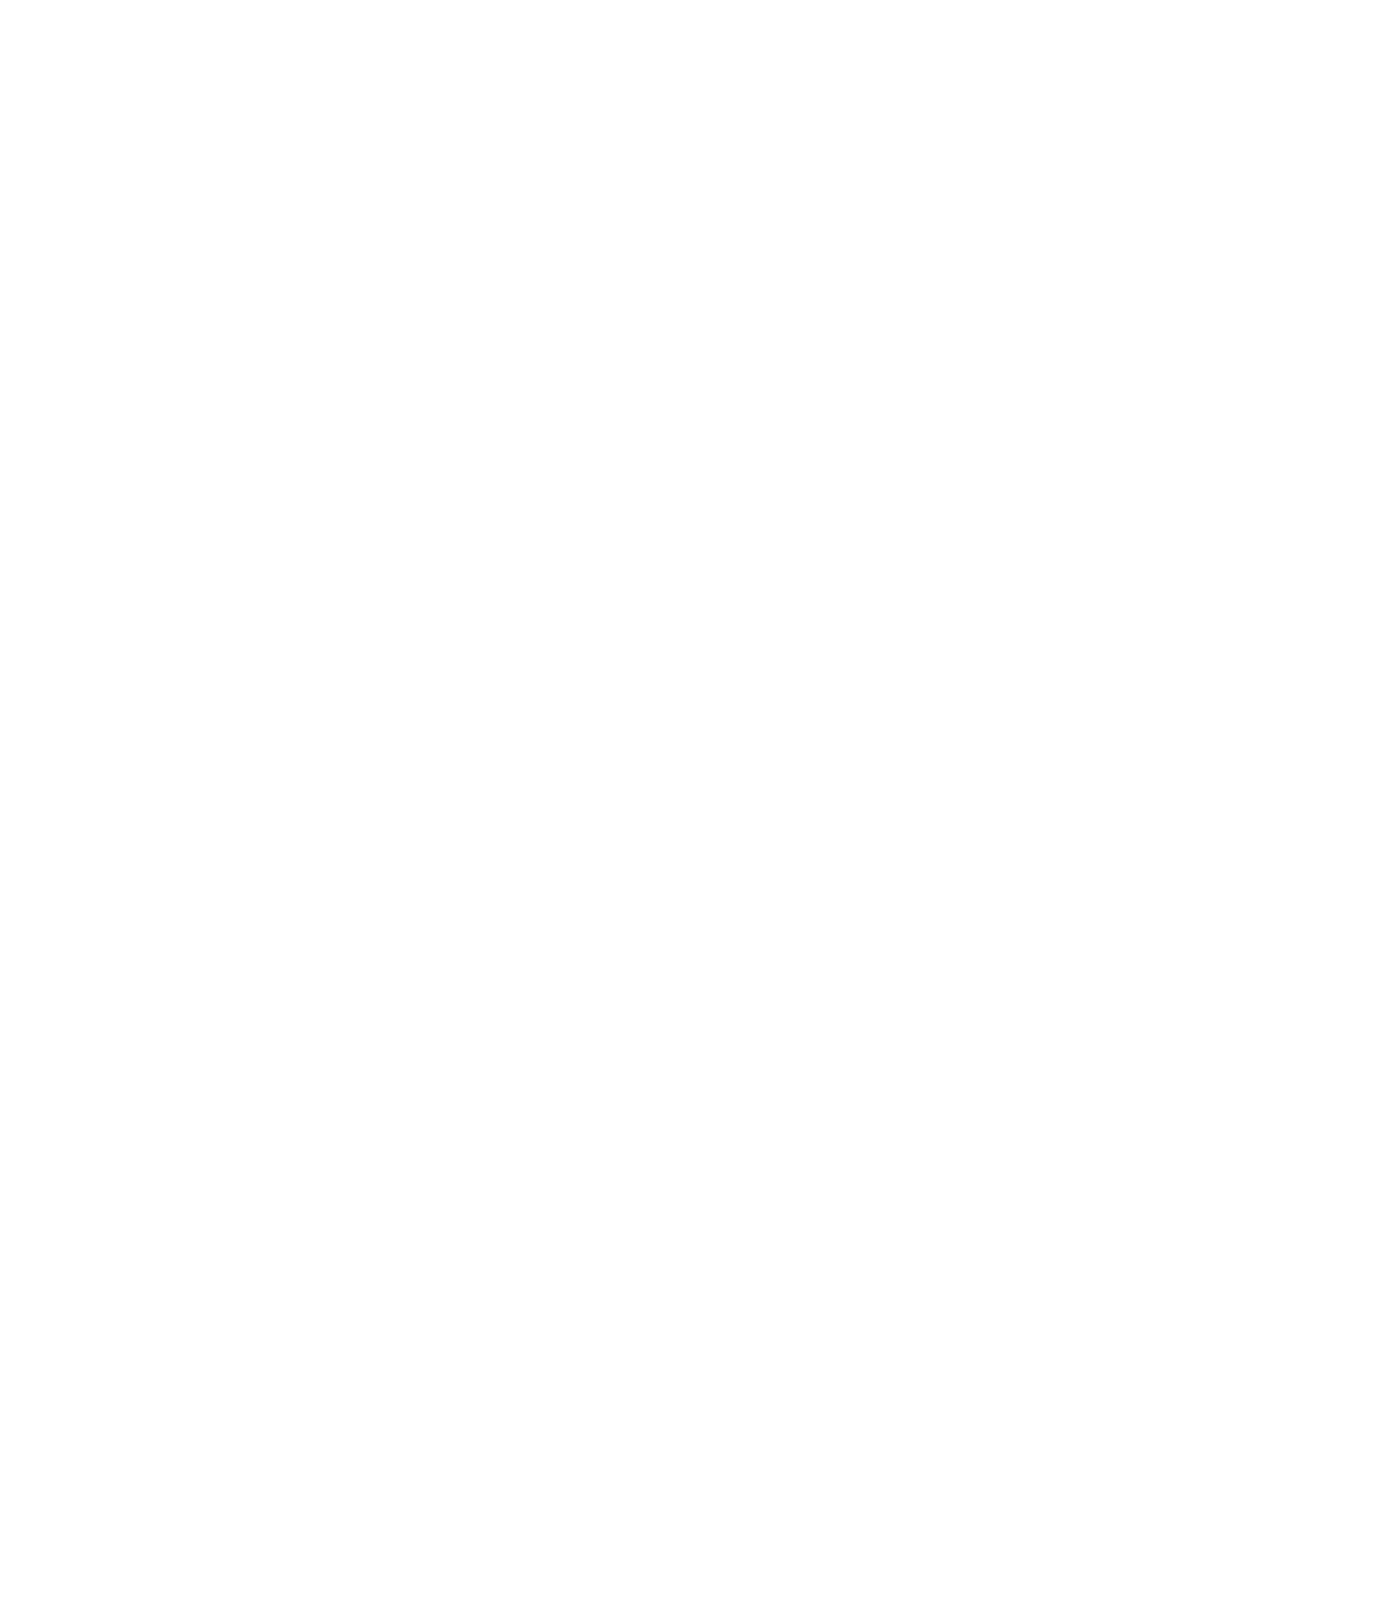 星野源オフィシャルイヤーブック『YELLOW MAGAZINE 2017-2018』「星野源×細野晴臣×山下達郎」の内容を一部解禁サムネイル画像!